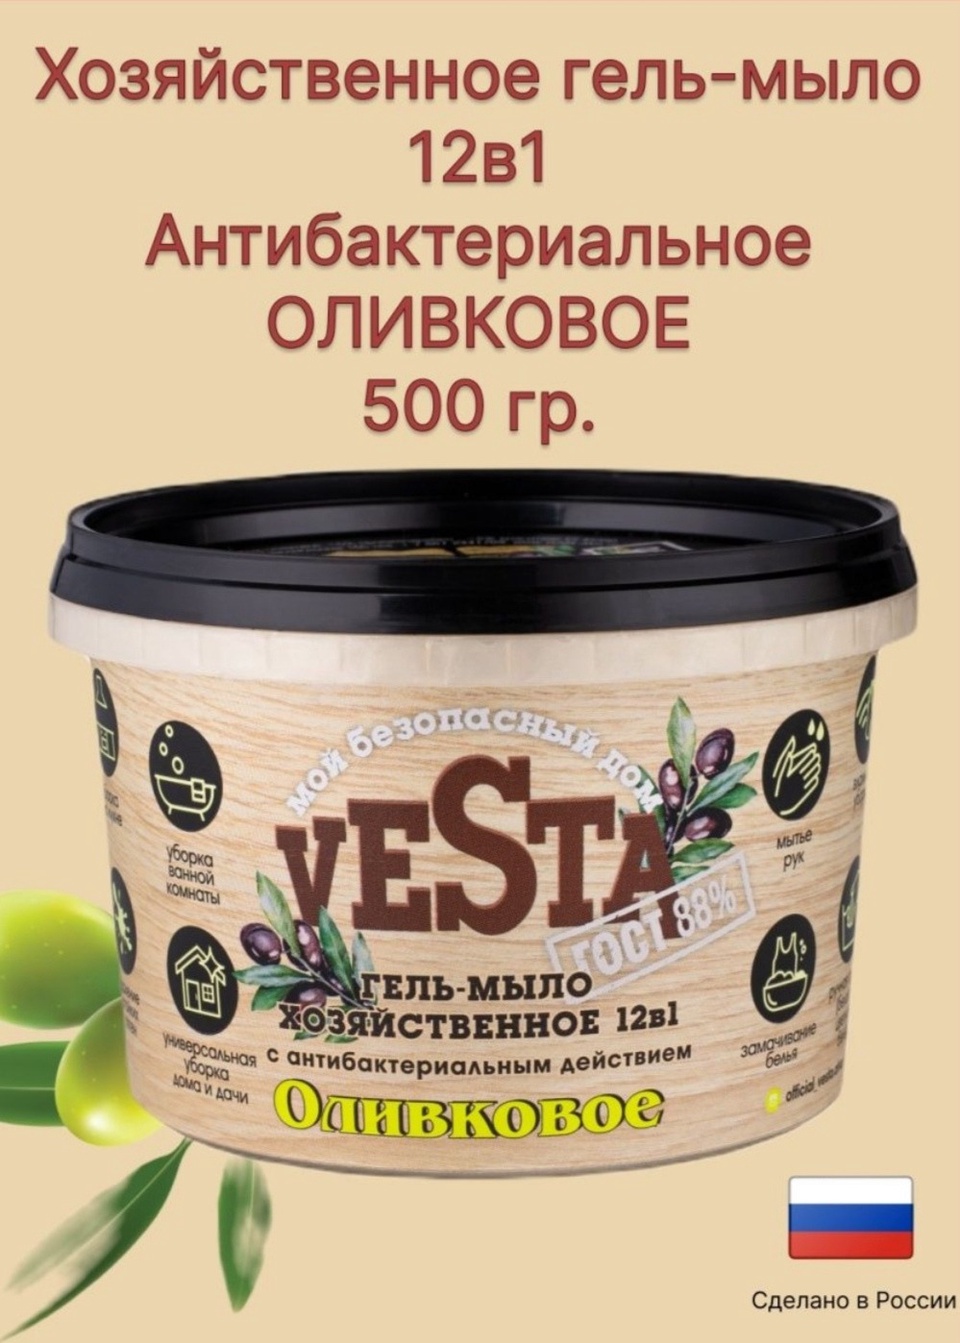 Vesta гель-мыло хозяйственное - 165 ₽, заказать онлайн.